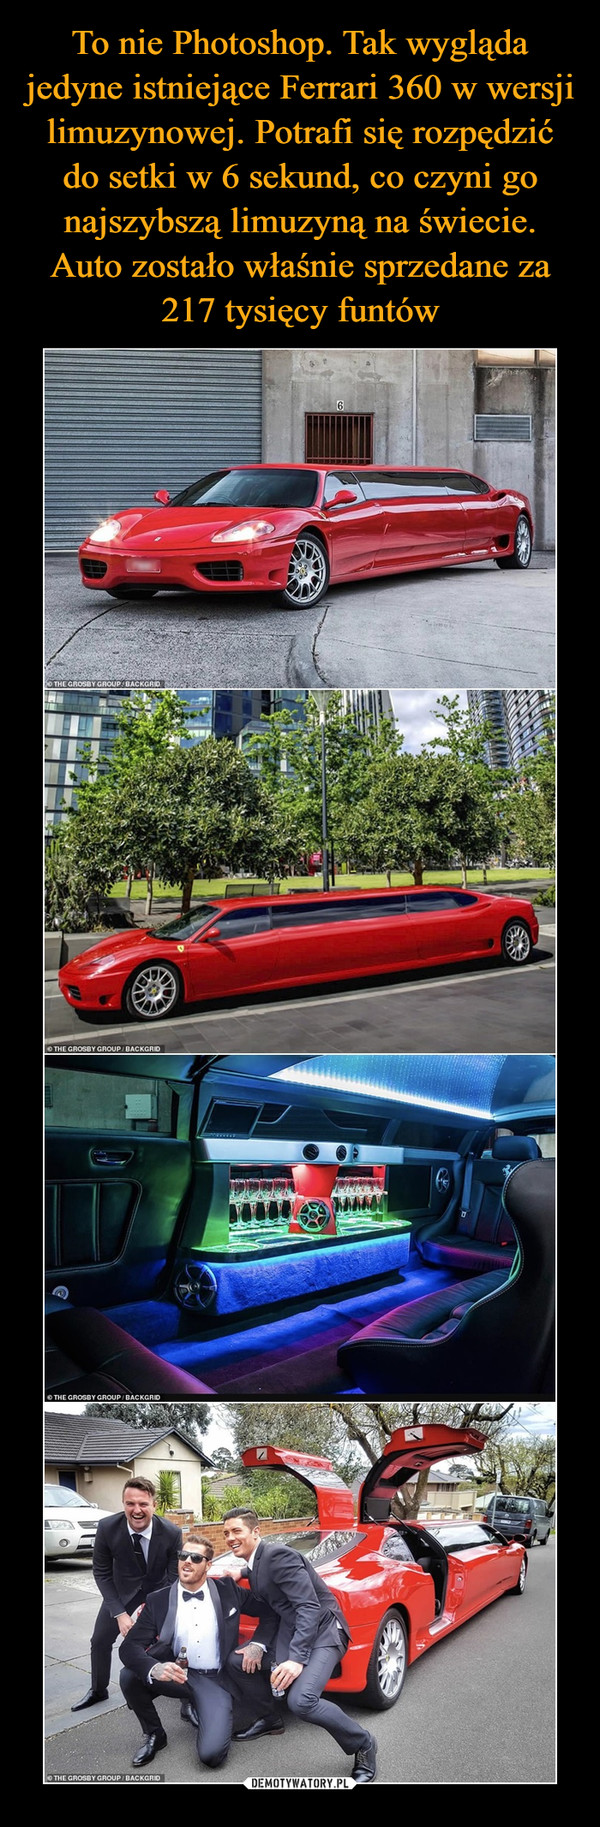 To nie Photoshop. Tak wygląda jedyne istniejące Ferrari 360 w wersji limuzynowej. Potrafi się rozpędzić do setki w 6 sekund, co czyni go najszybszą limuzyną na świecie. Auto zostało właśnie sprzedane za 217 tysięcy funtów